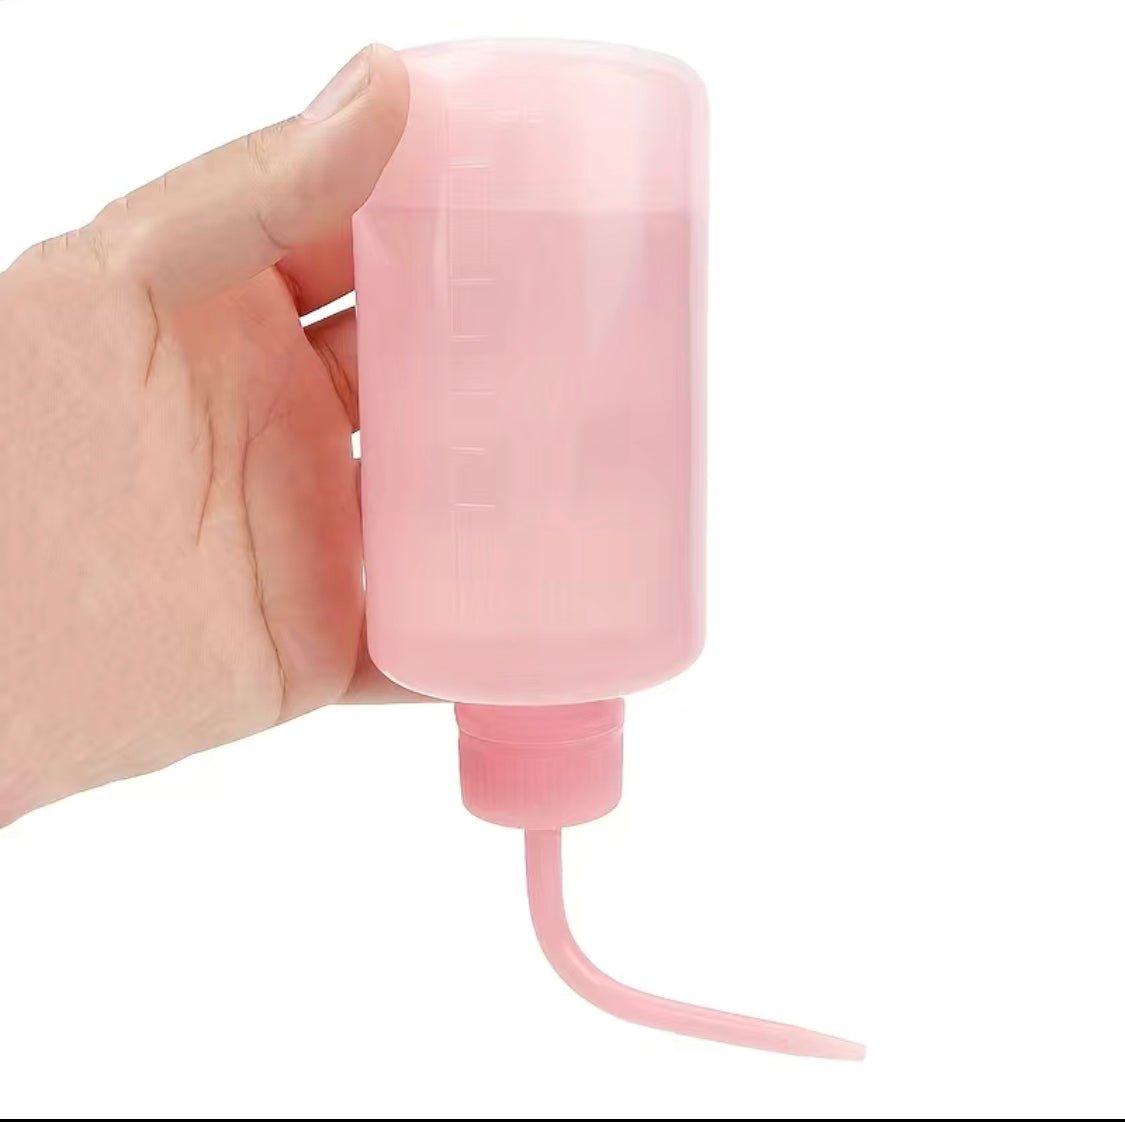 Eyelash Rinse Squeeze Bottle, 250ml (Pink)